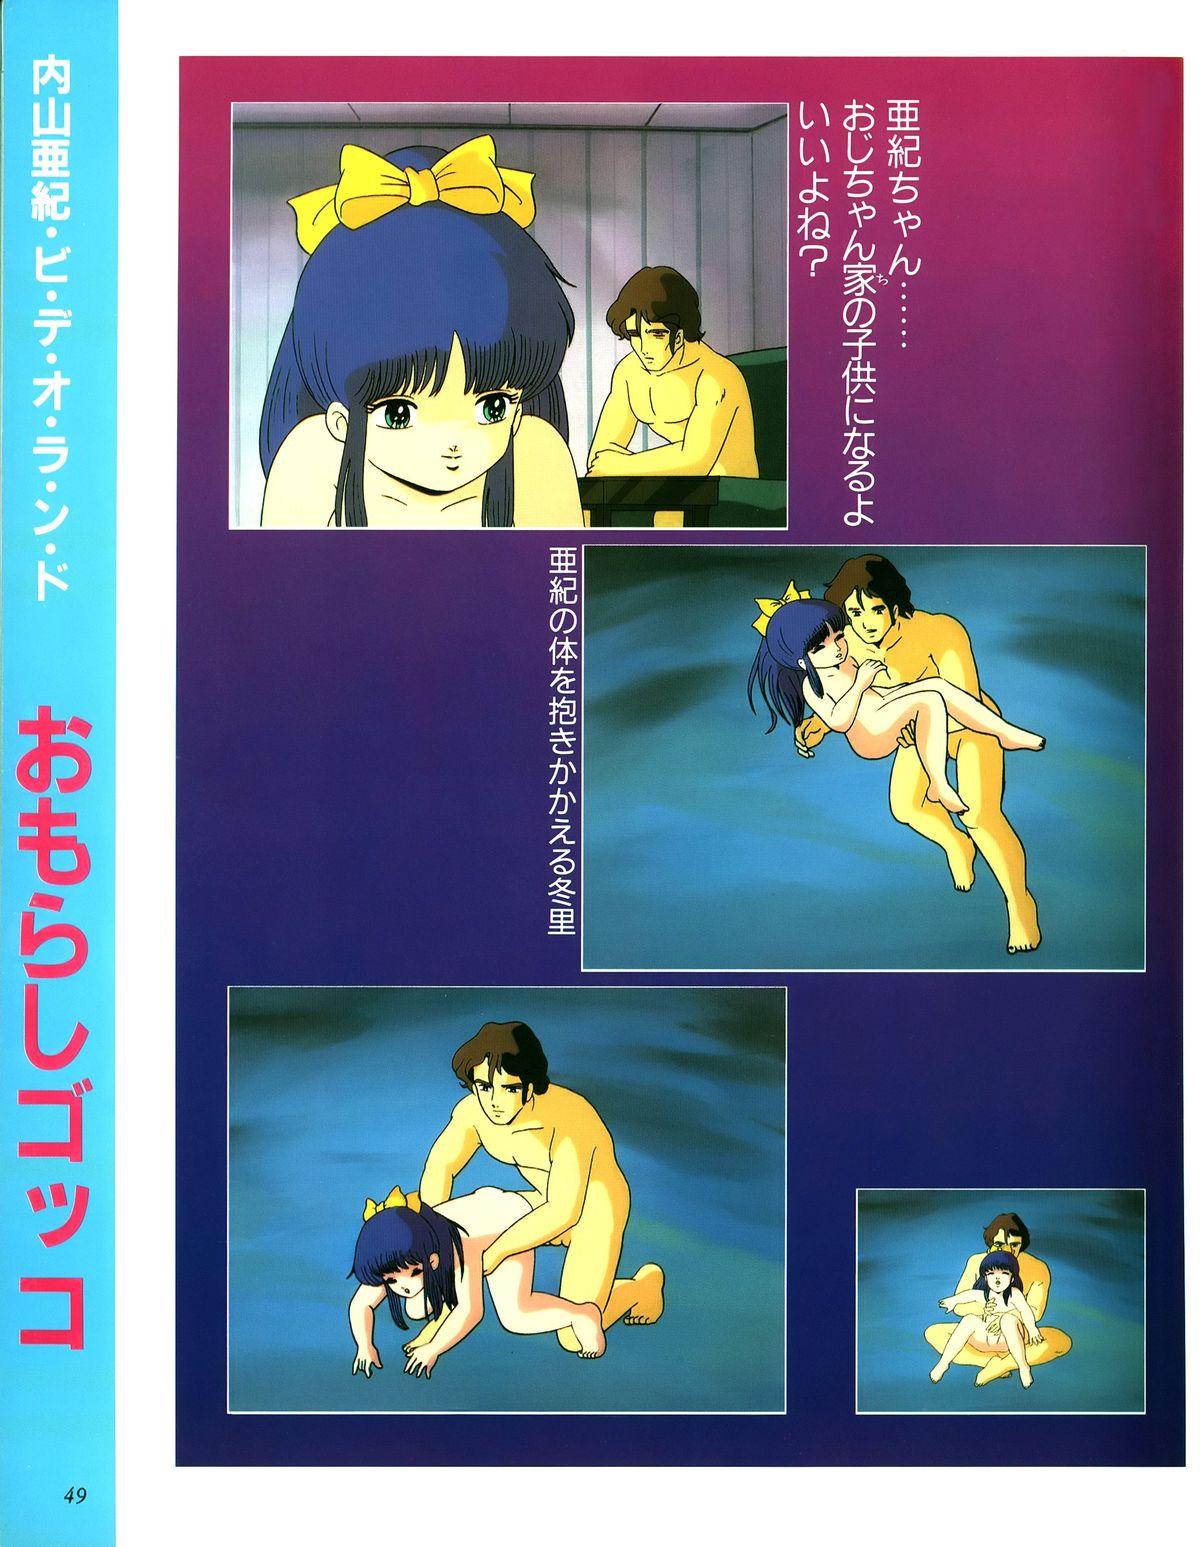 [Uchiyama Aki] Aki Fantasy (Tsukasa Mook),1985 44